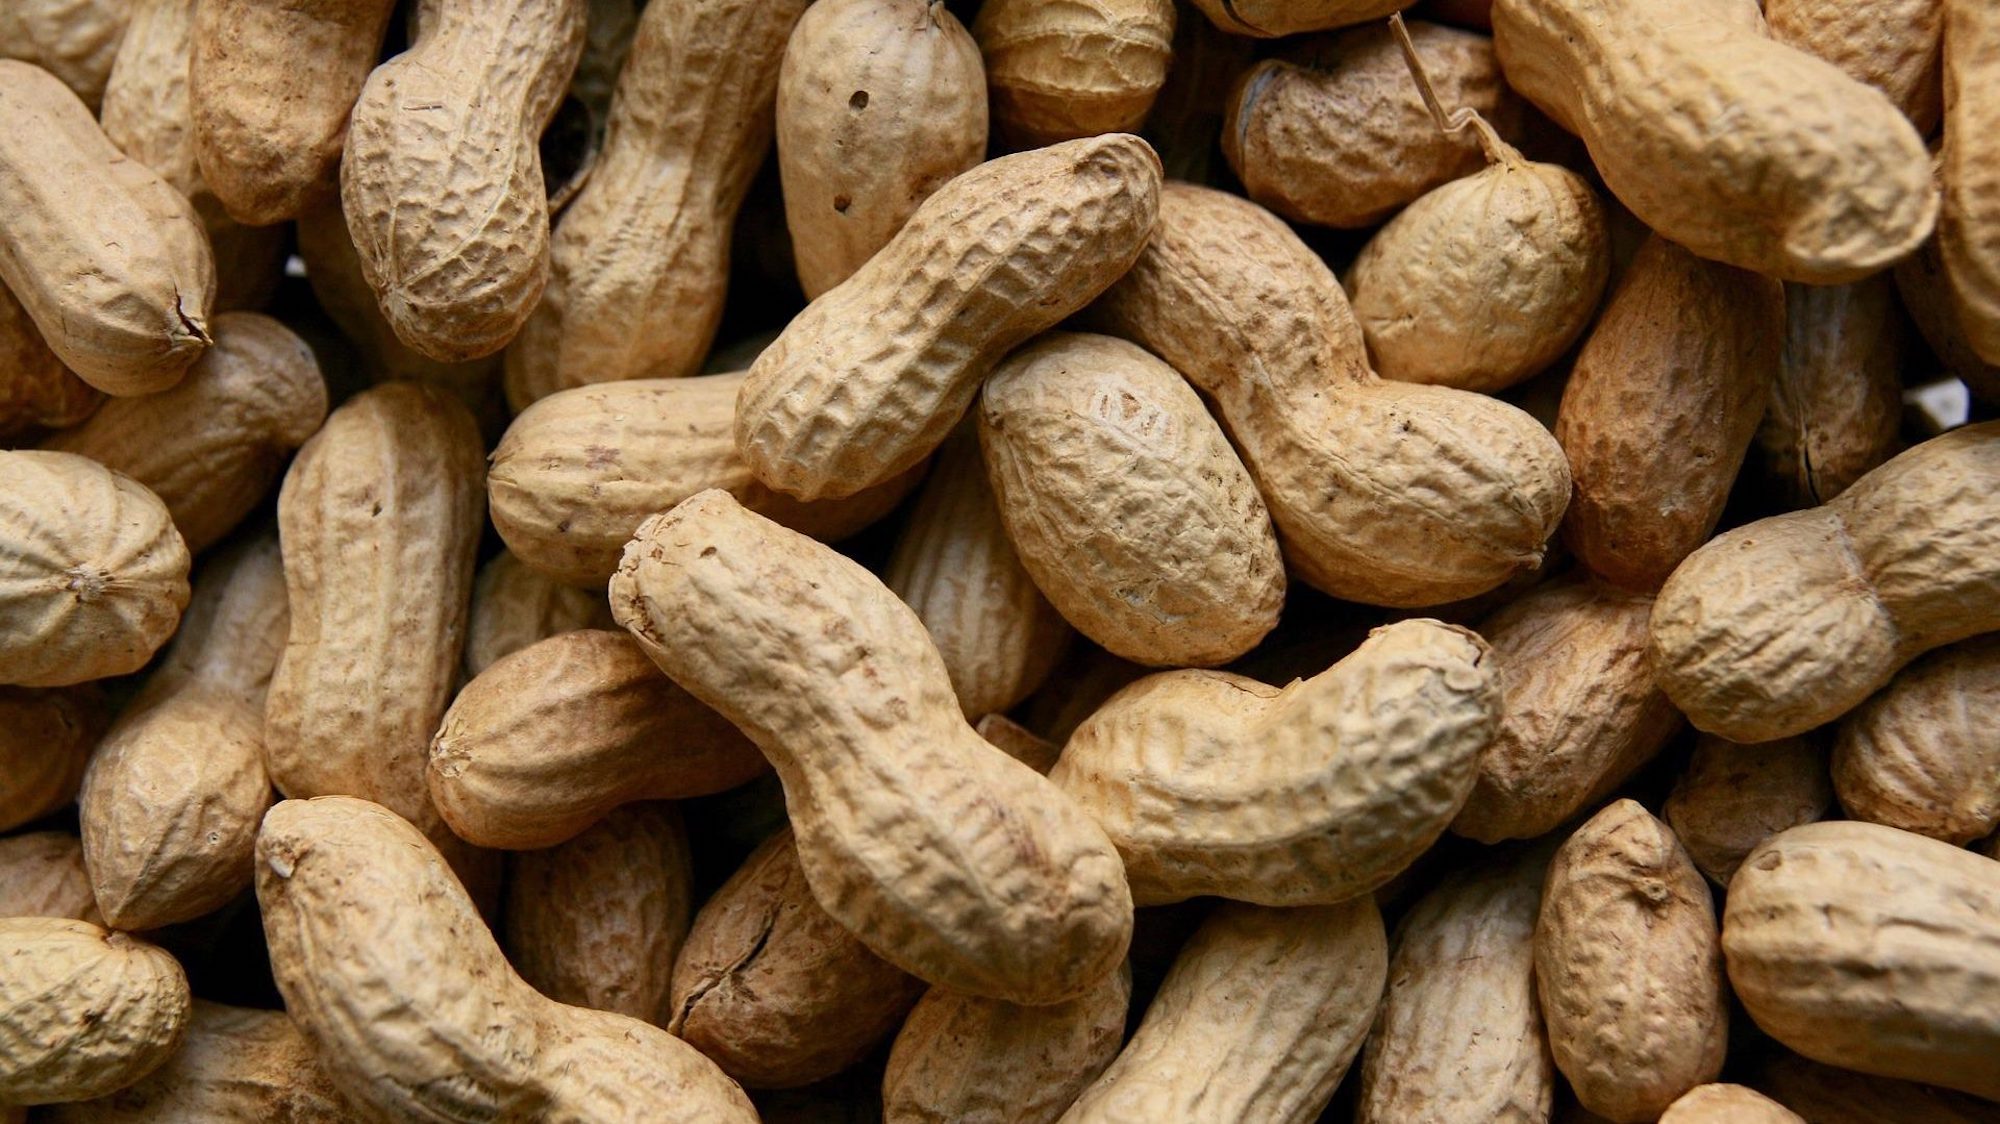 China peanut imports from Brazil